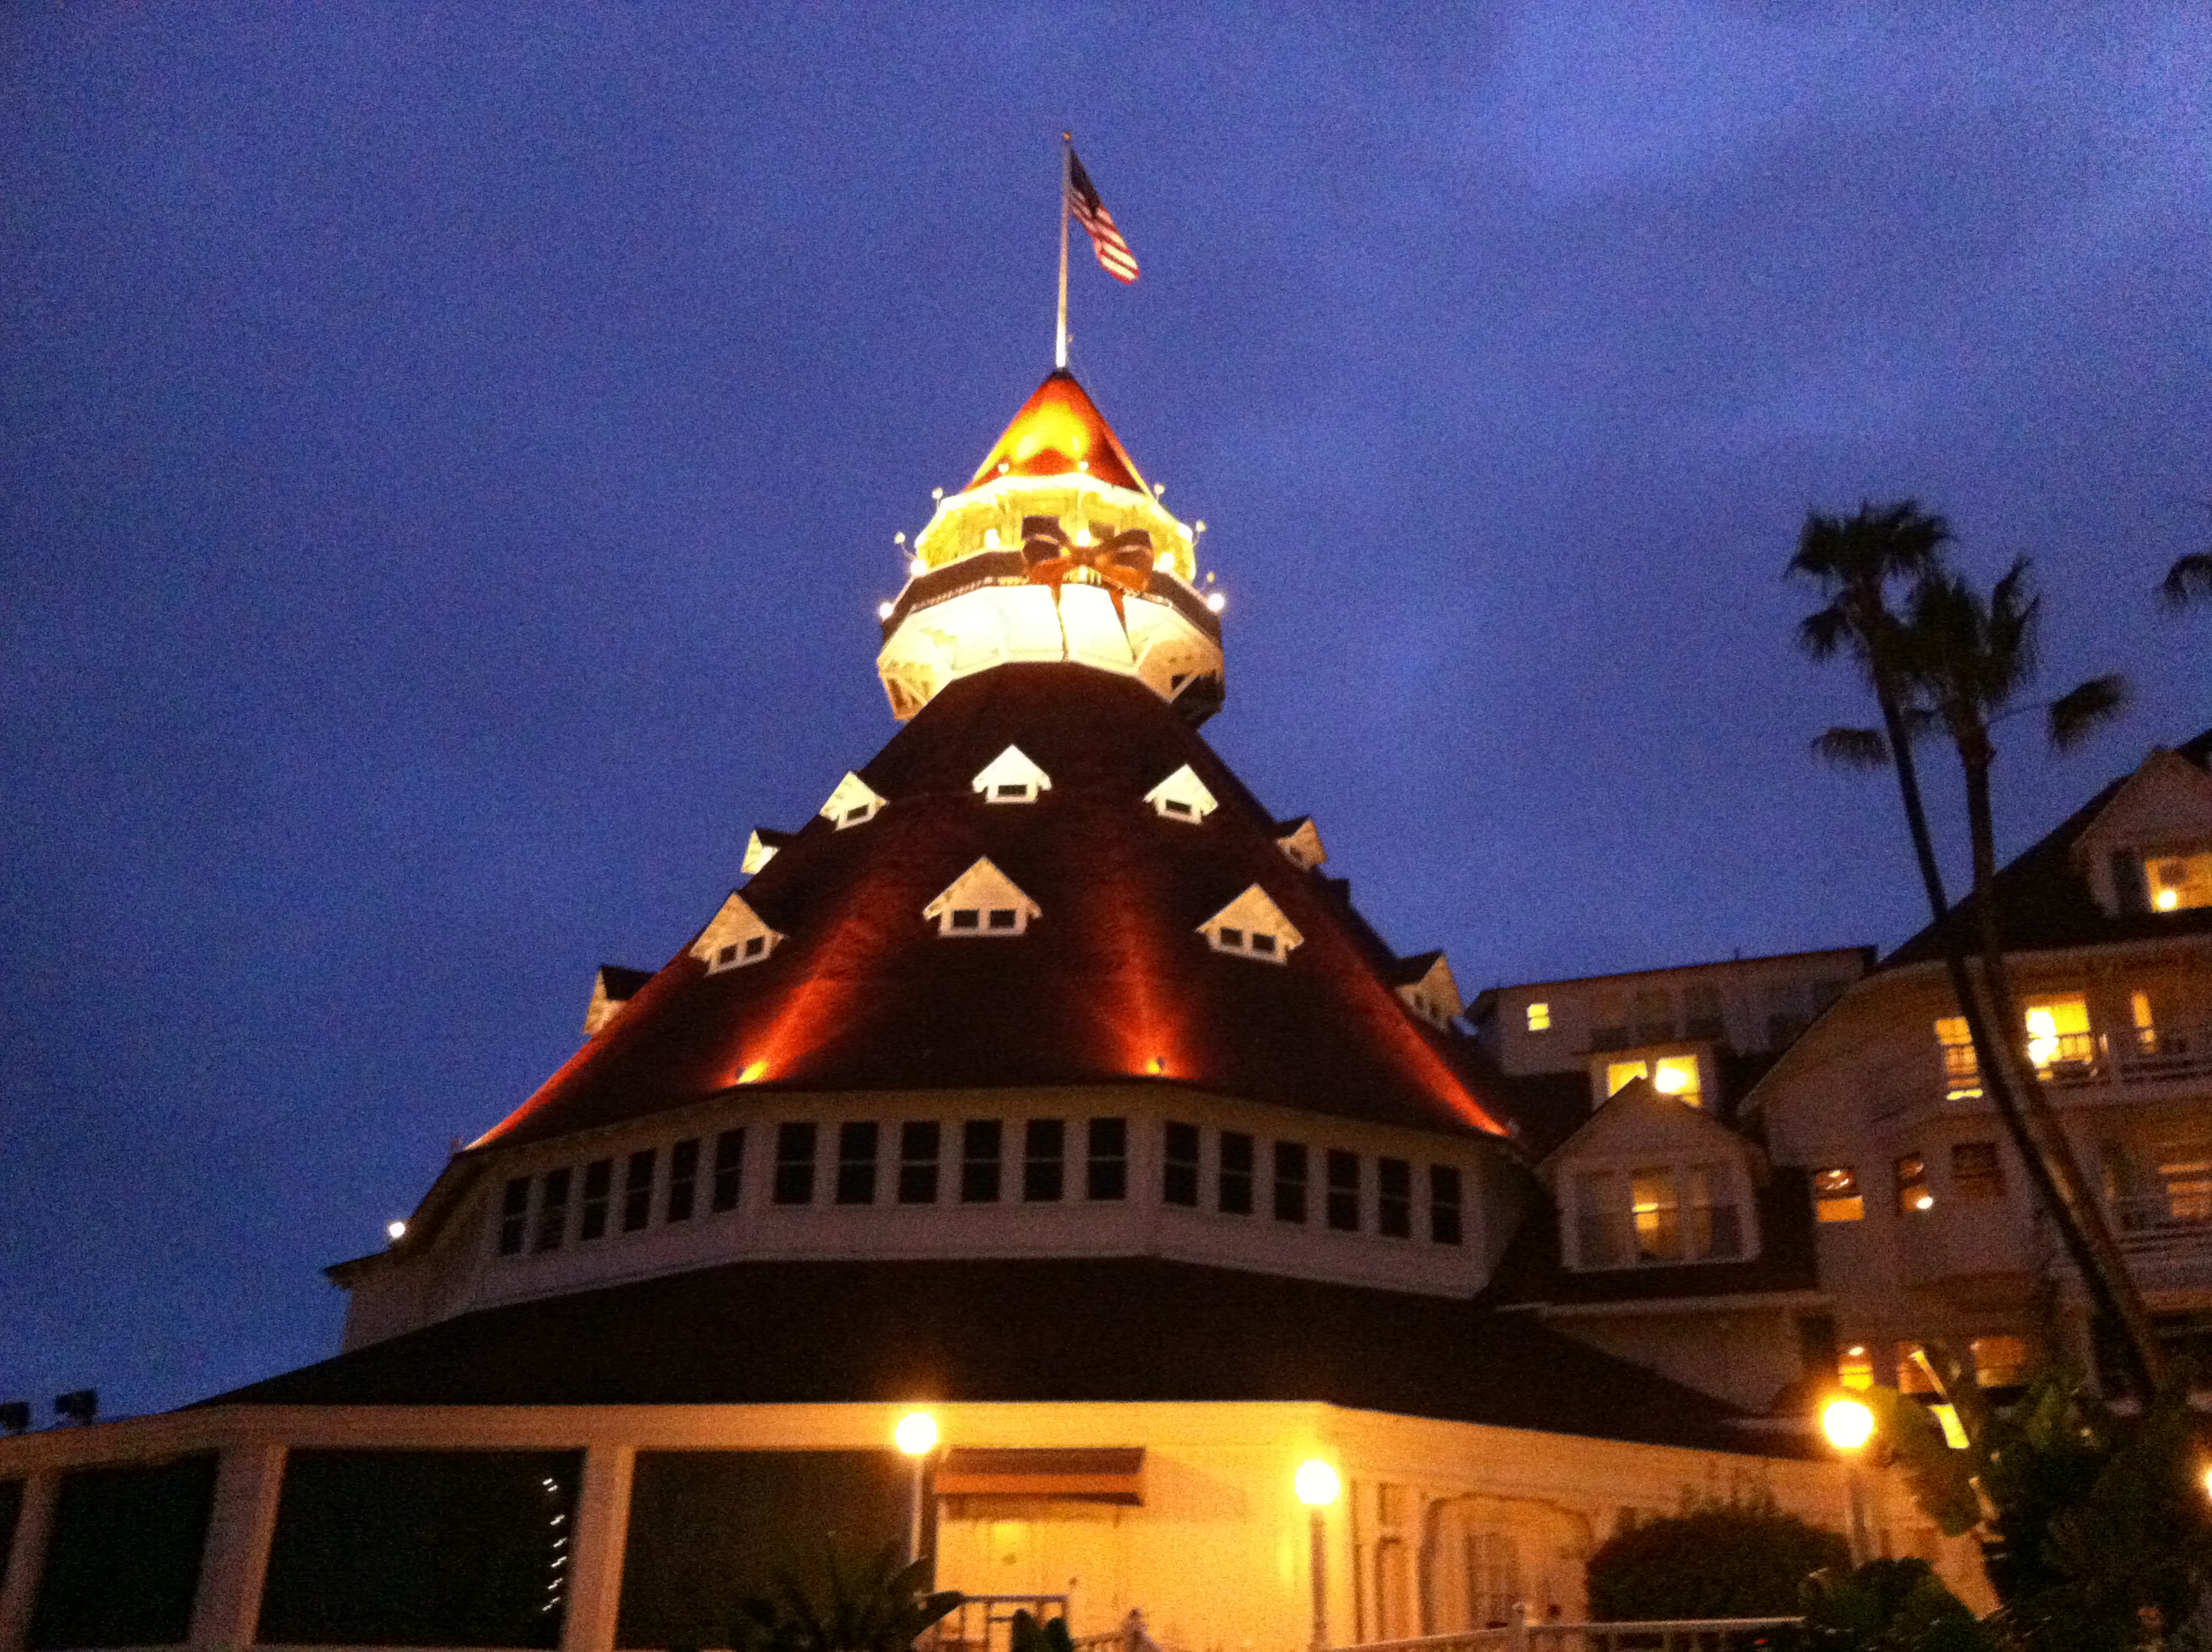 Hotel Del Coronado, California